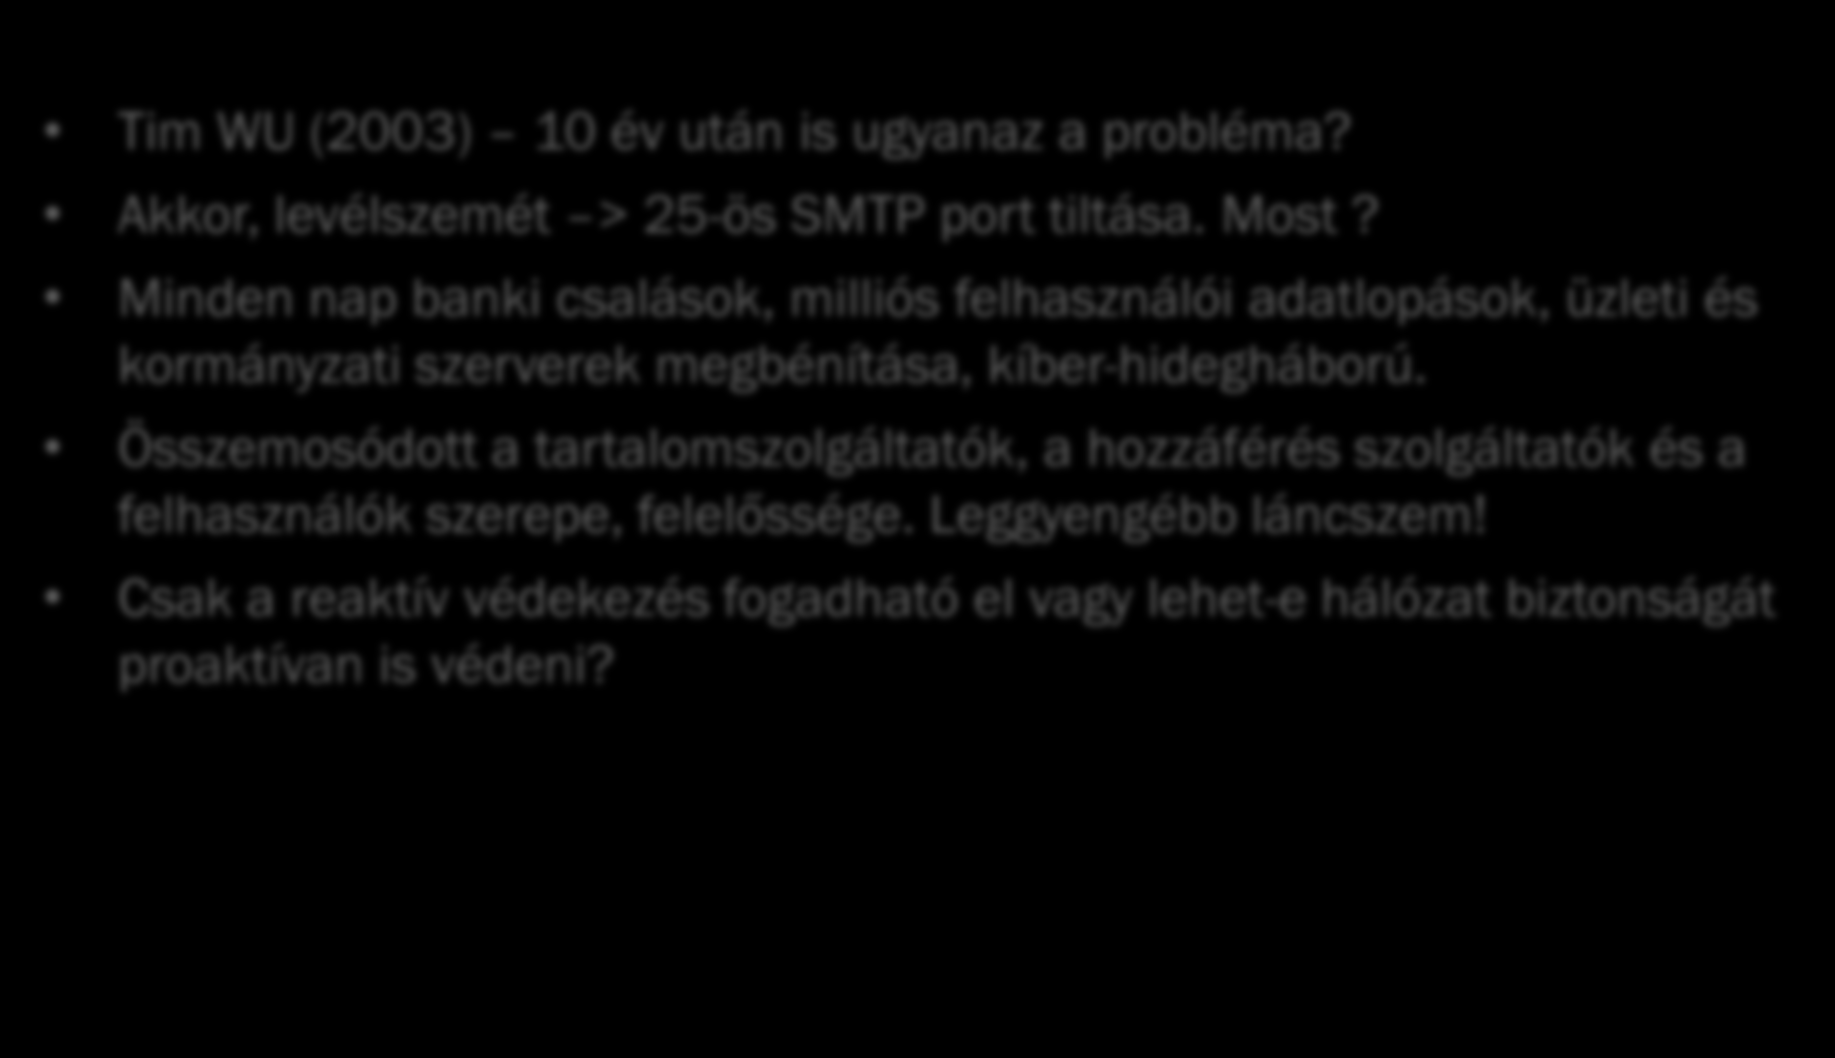 5 Információbiztonsági kérdések Tim WU (2003) 10 év után is ugyanaz a probléma? Akkor, levélszemét > 25-ös SMTP port tiltása. Most?